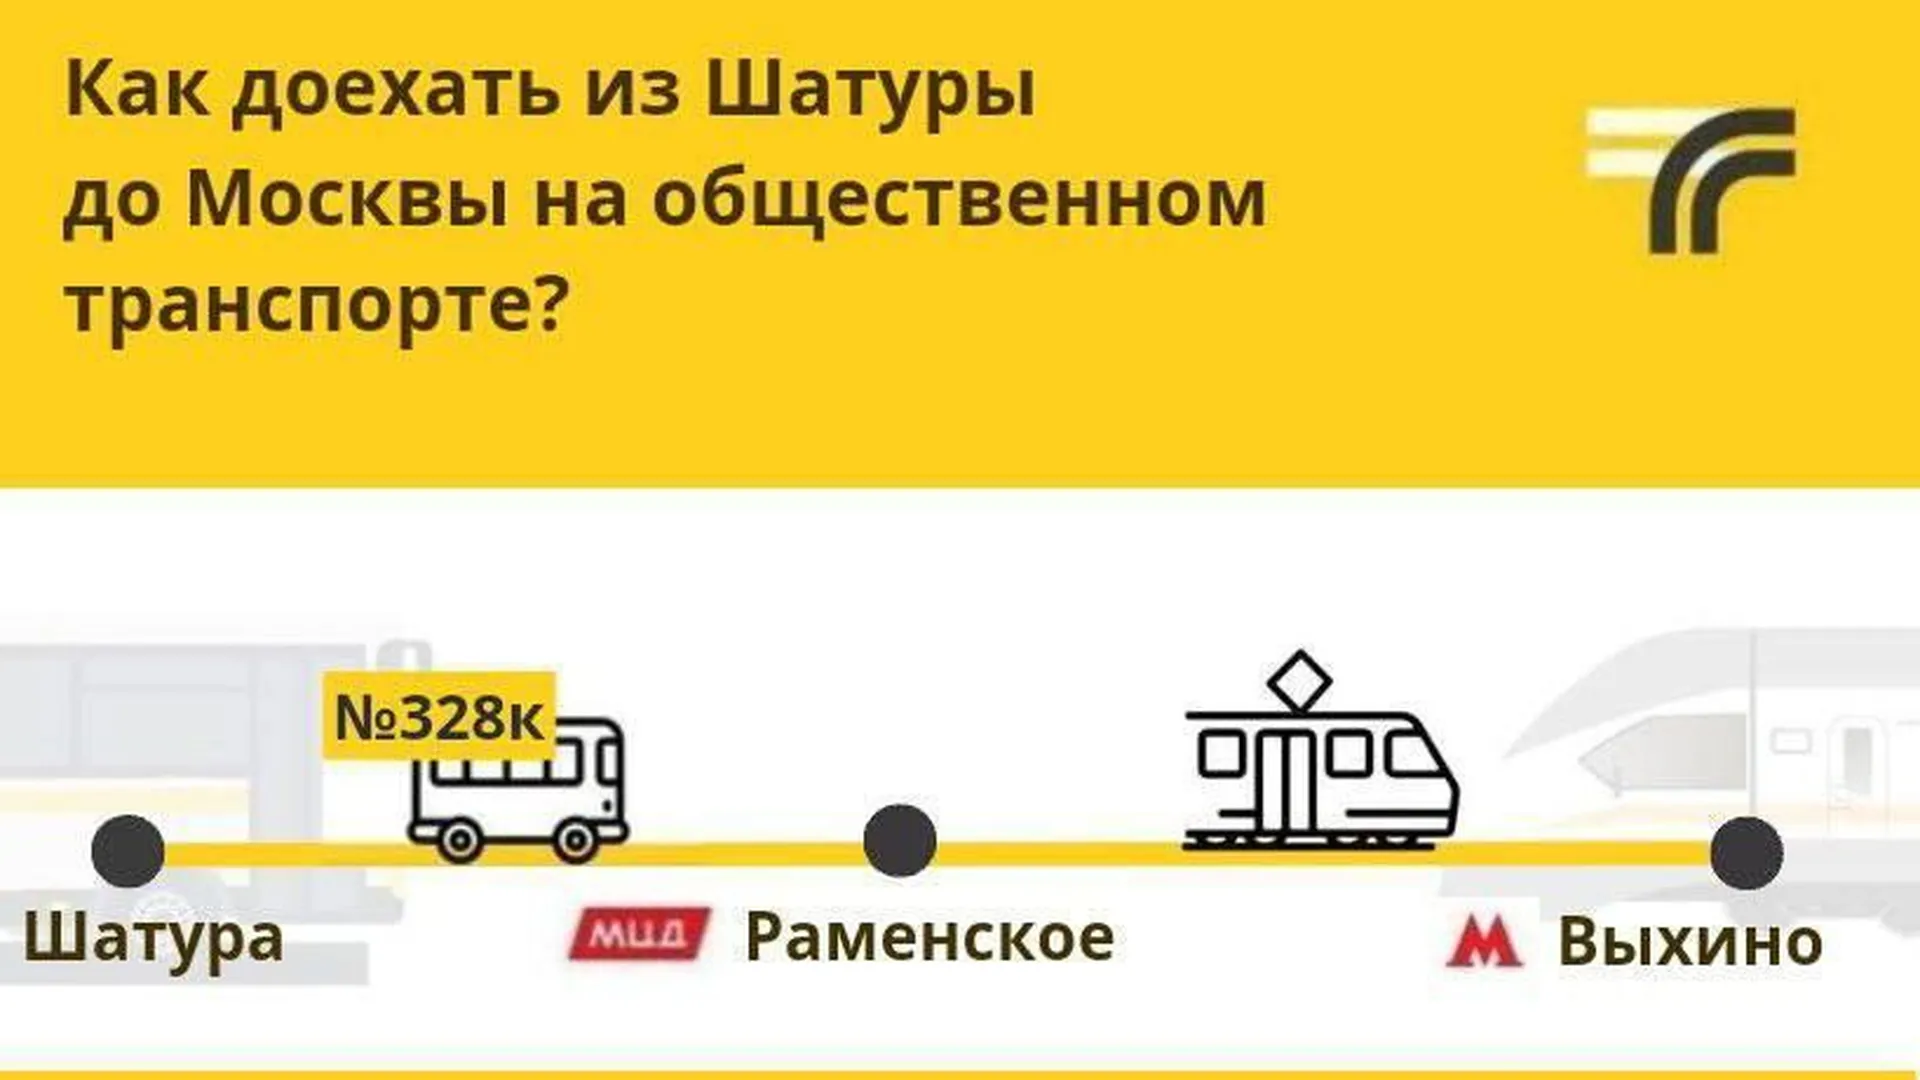 Автобусы маршрута № 328к будут курсировать до станции МЦД Раменское